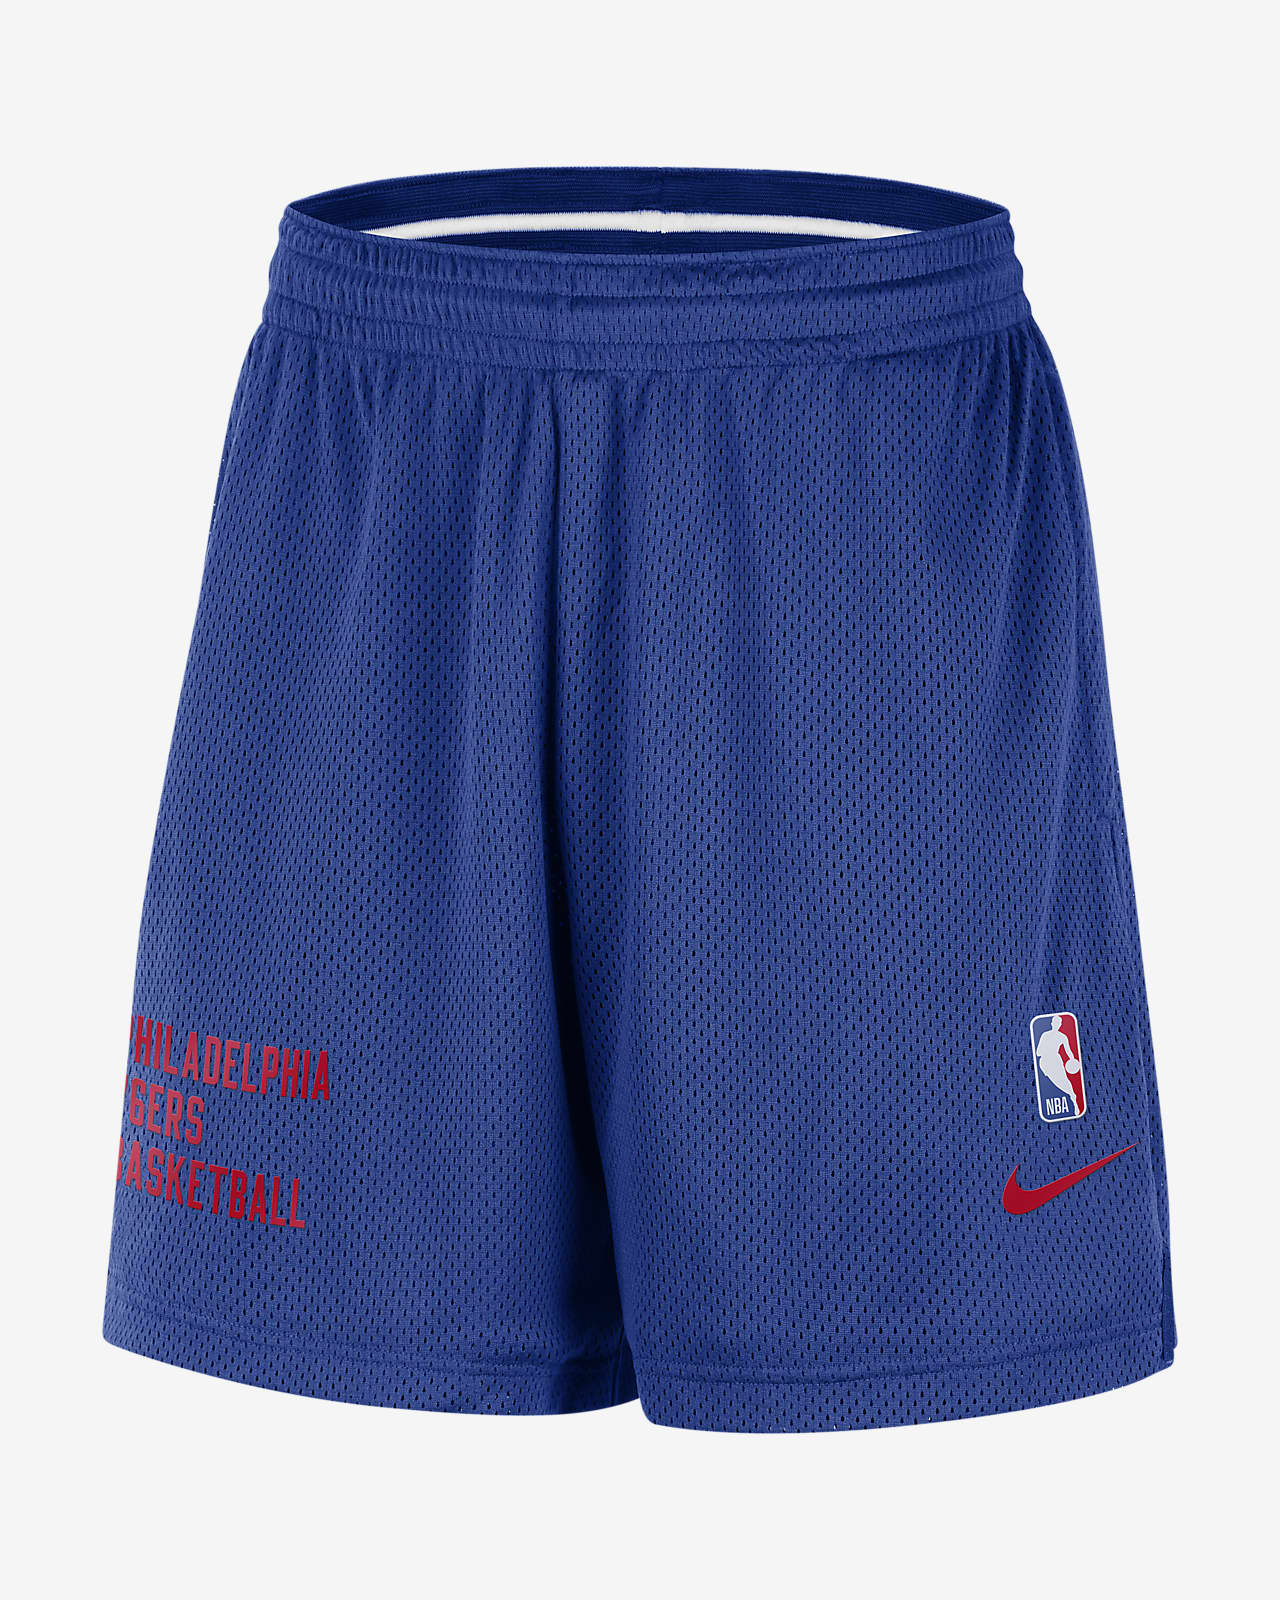 Philadelphia 76ers Men's Nike NBA Mesh Shorts